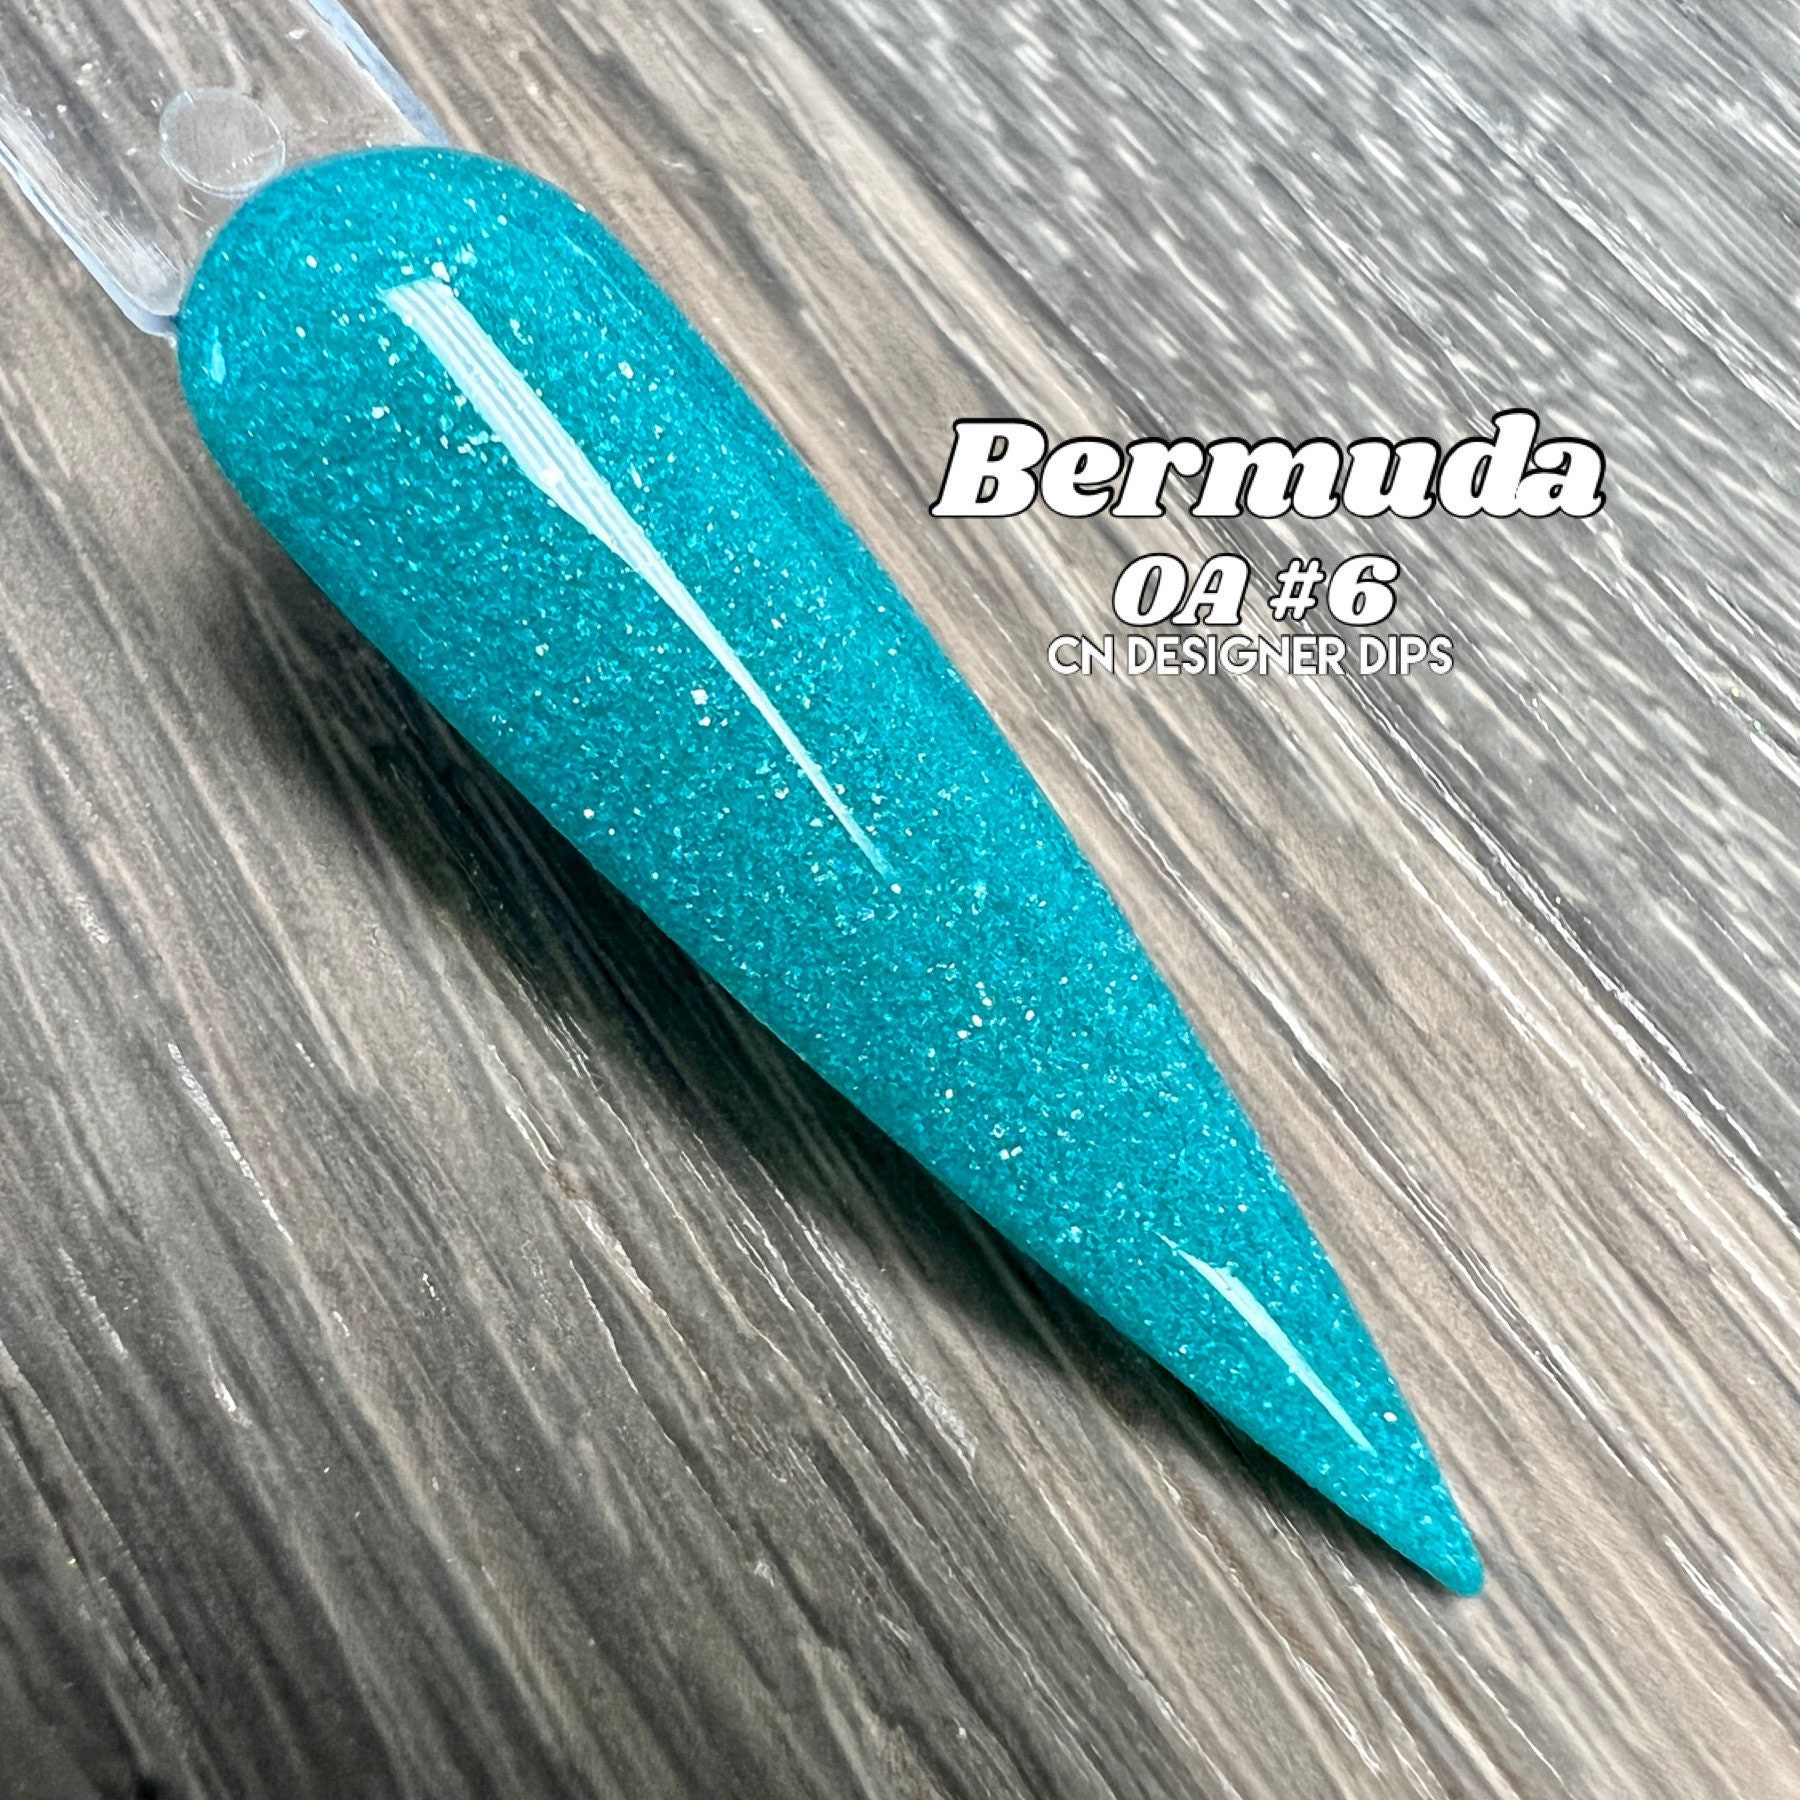 Bermuda Oa6 - Dippulver, Dippulver Für Nägel, Nagel Dip Powder, Dip, Dip Nail, Nail Powders, Powder, Acryl von Etsy - CNDesignerDips